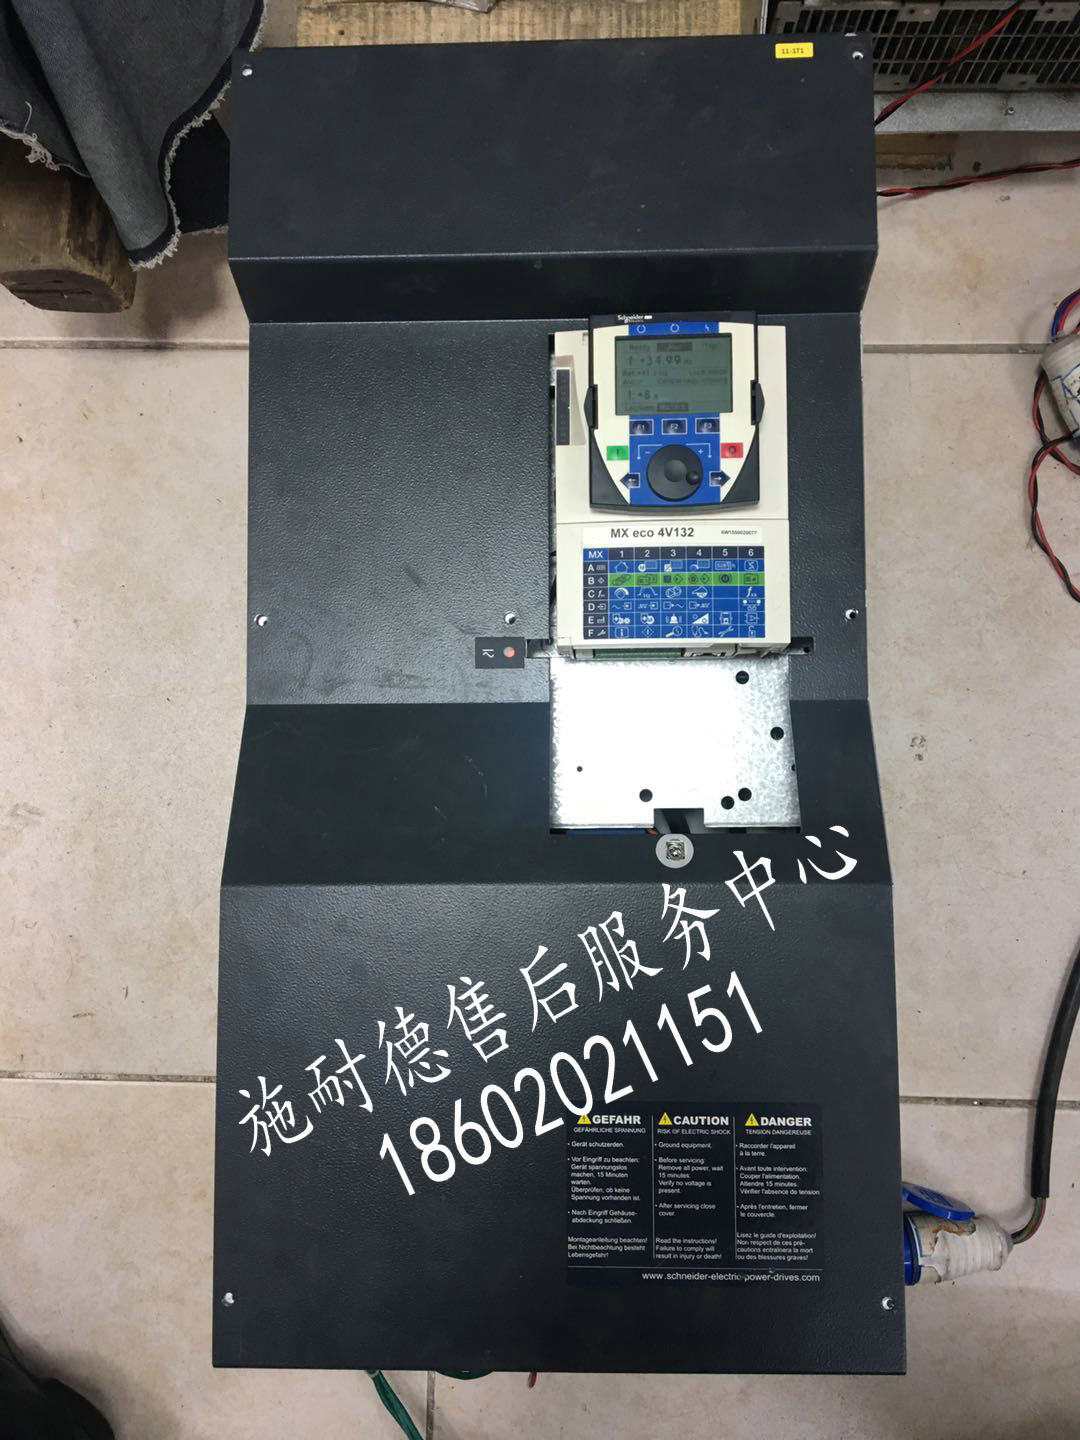 广州市南沙区海瑞克盾构机PDRIVE eco 4V110变频器维修